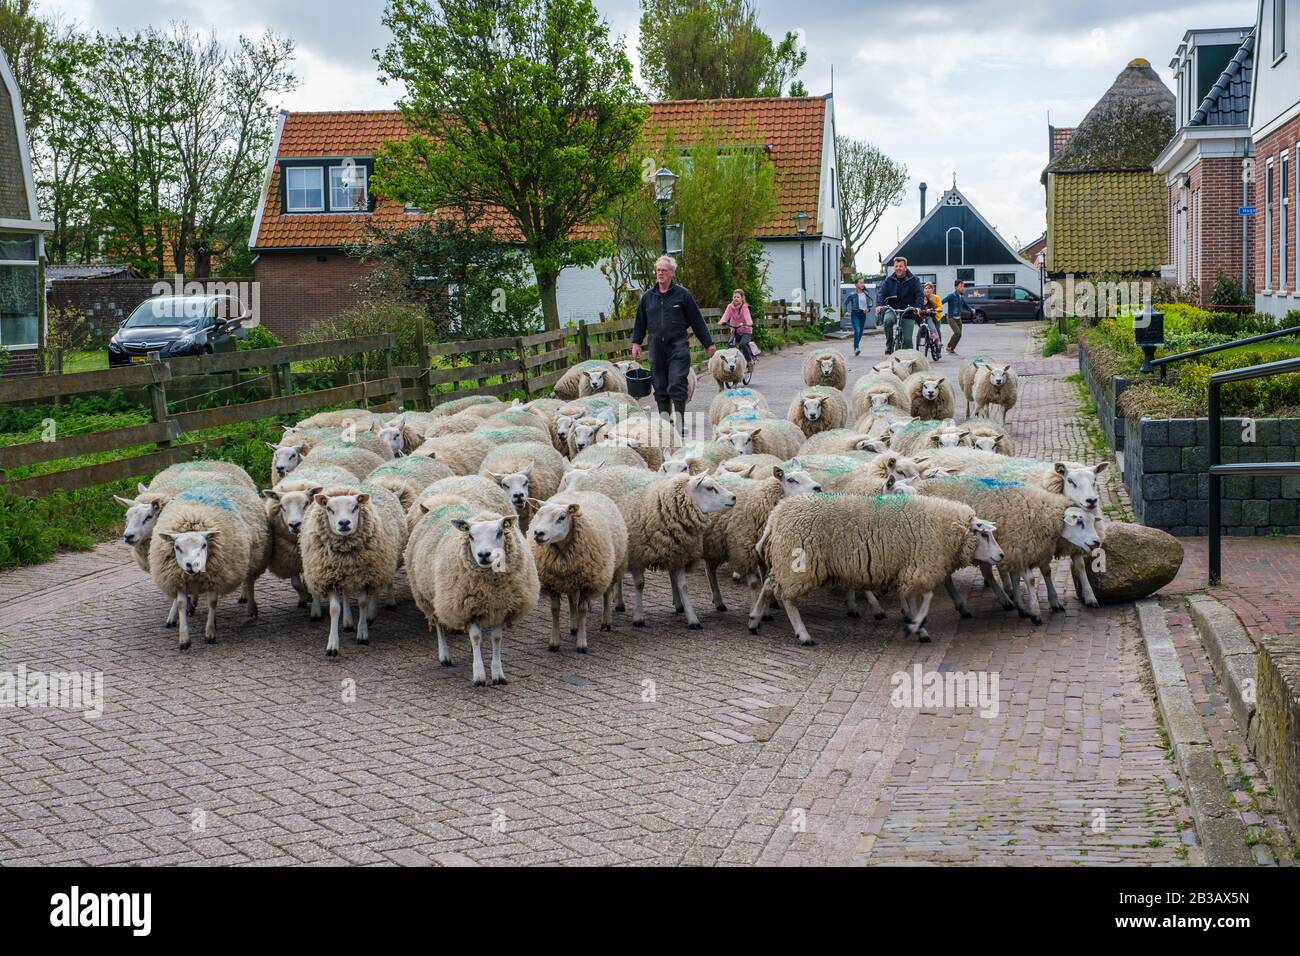 Granjero con una manada de ovejas caminando al otro lado de una calle Foto de stock